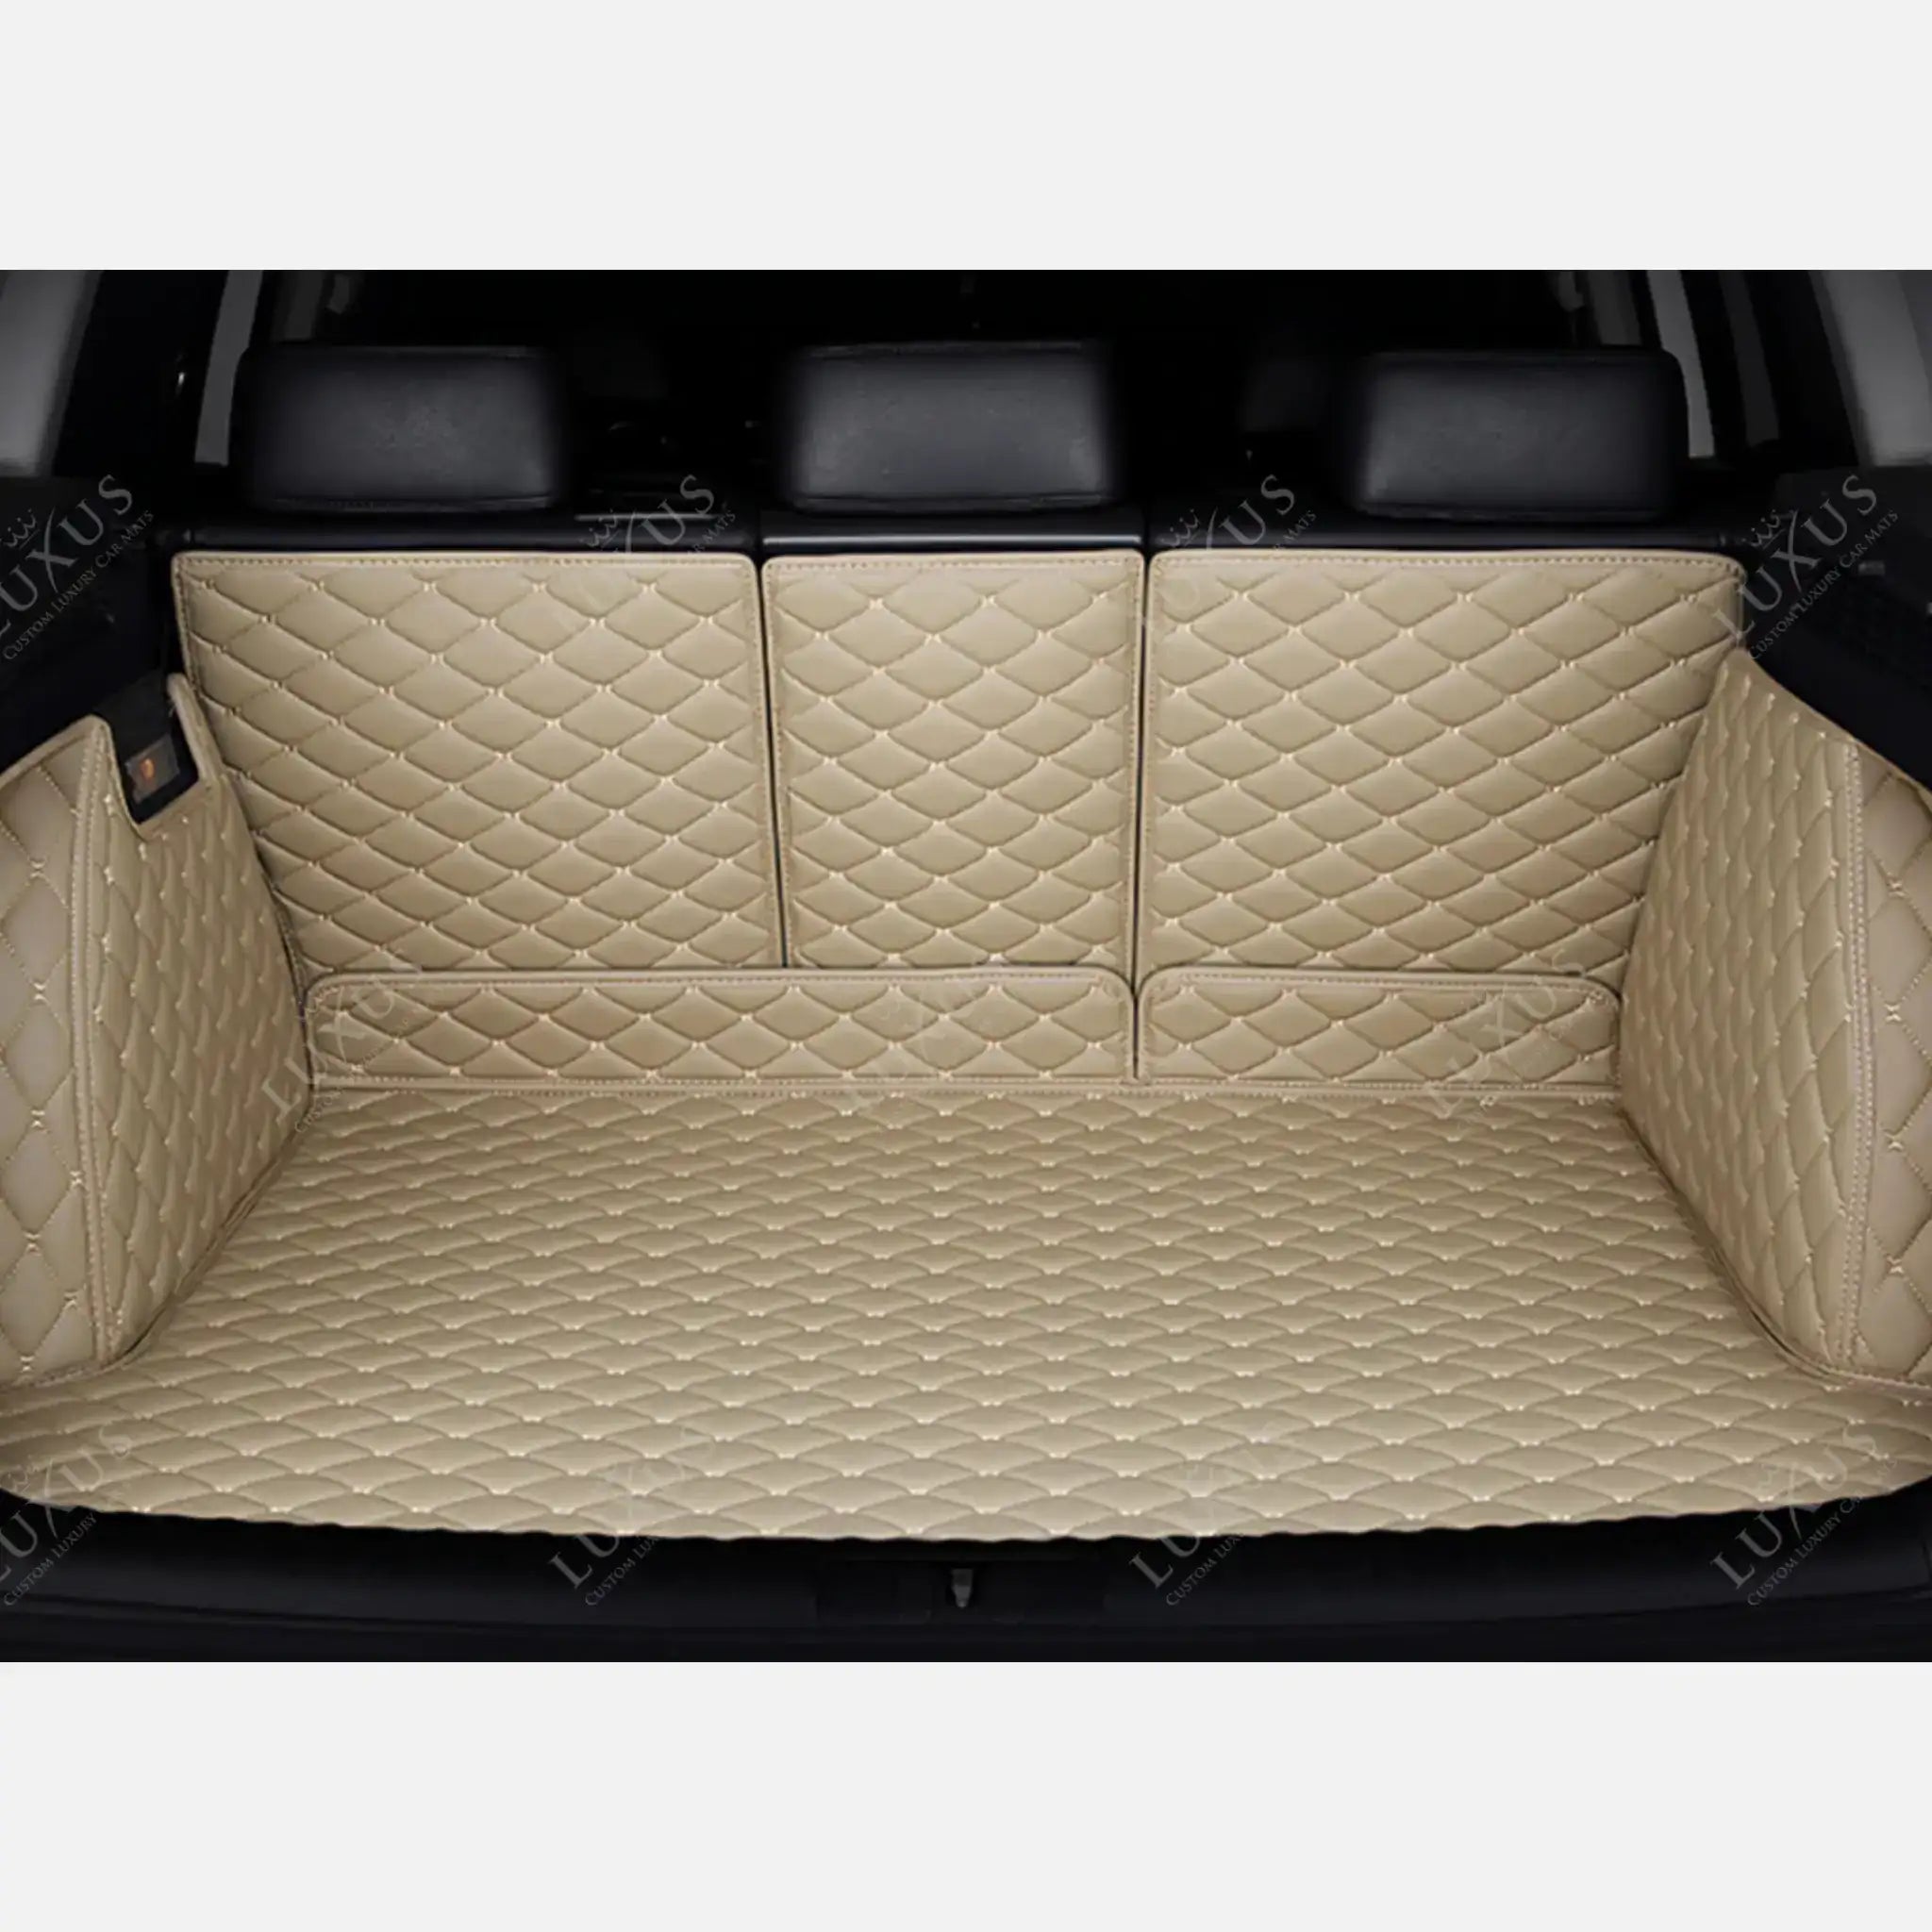 Tappetini per auto Luxus™ - Tappetino per bagagliaio/stivale in pelle beige crema 3D